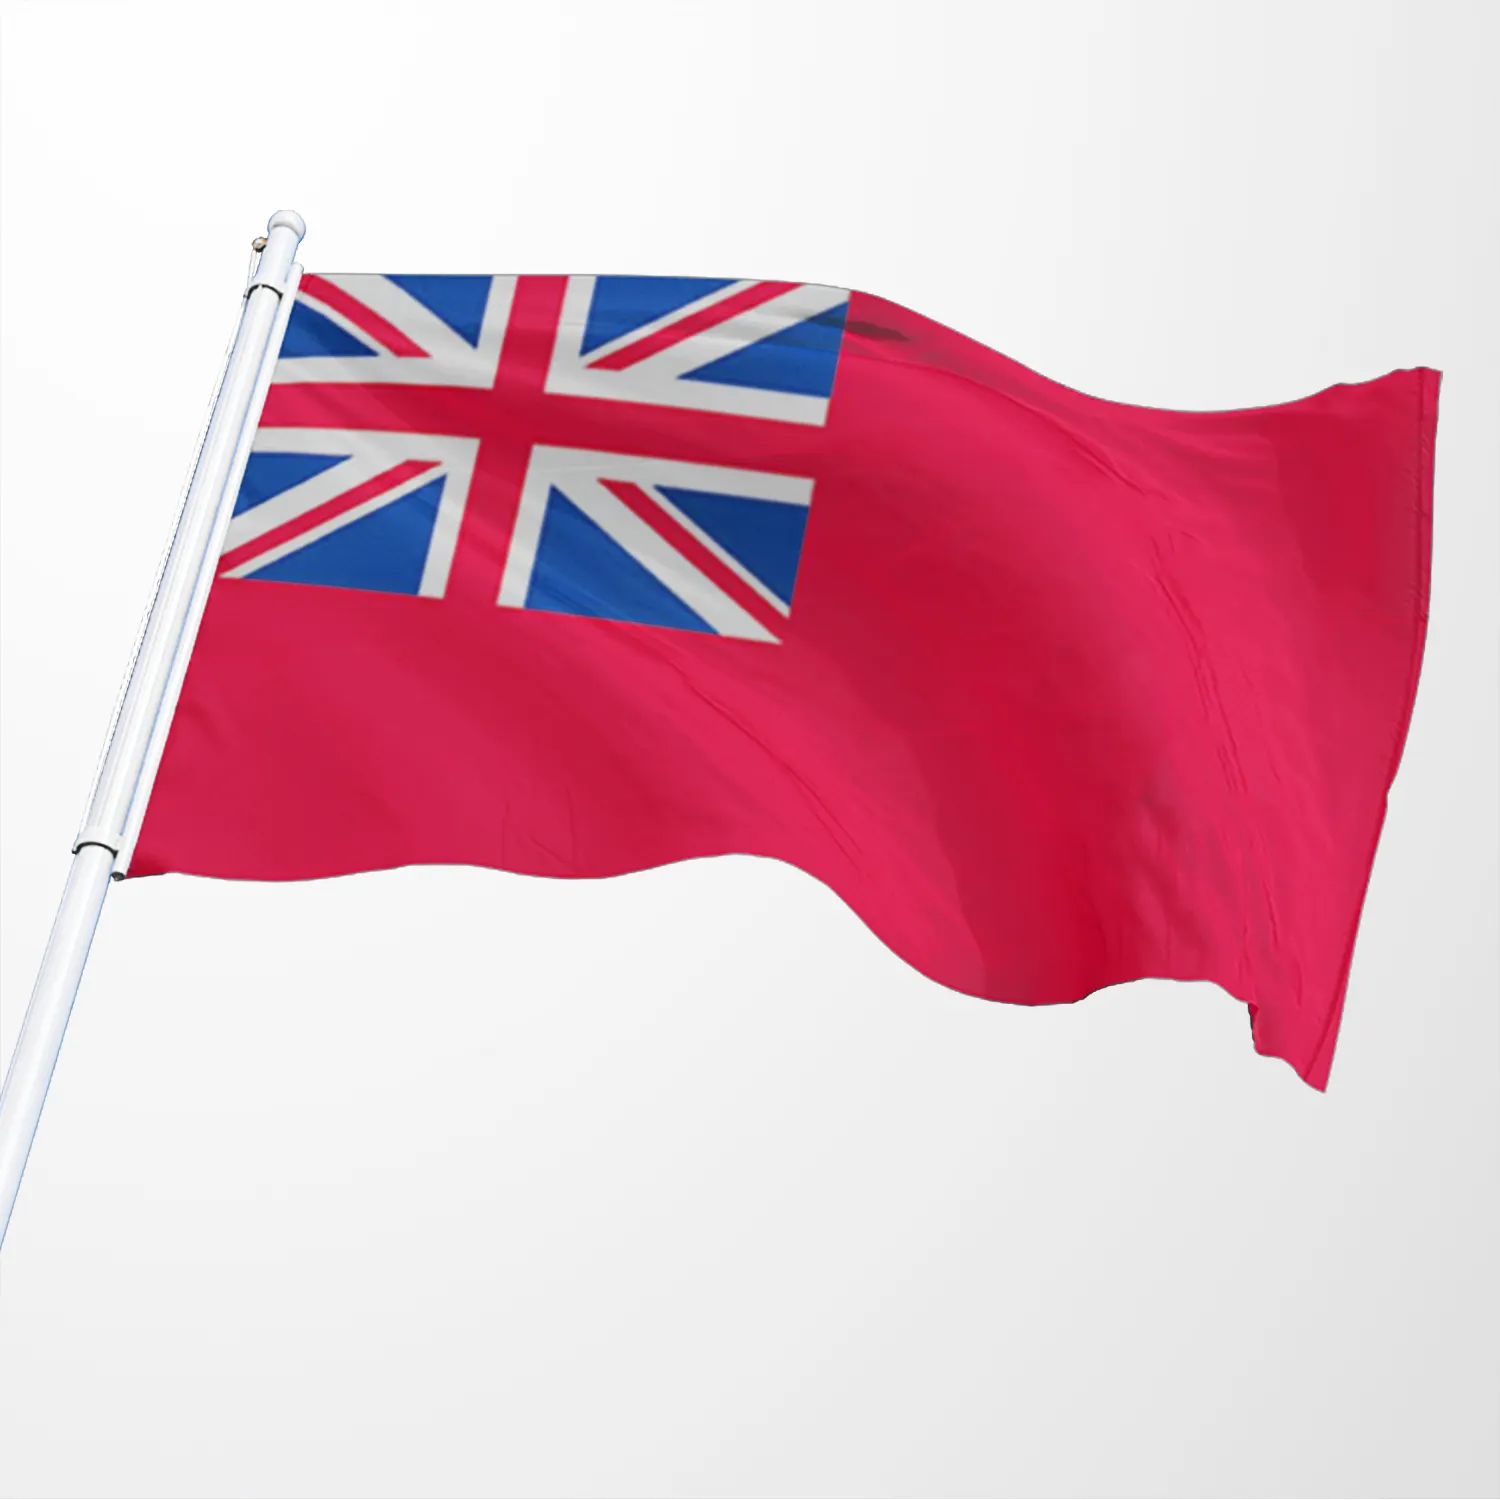 Produto promocional de alta qualidade 3x5ft 100% poliéster, qualquer logotipo personalizado da vela, bandeira náutica britânica vermelha